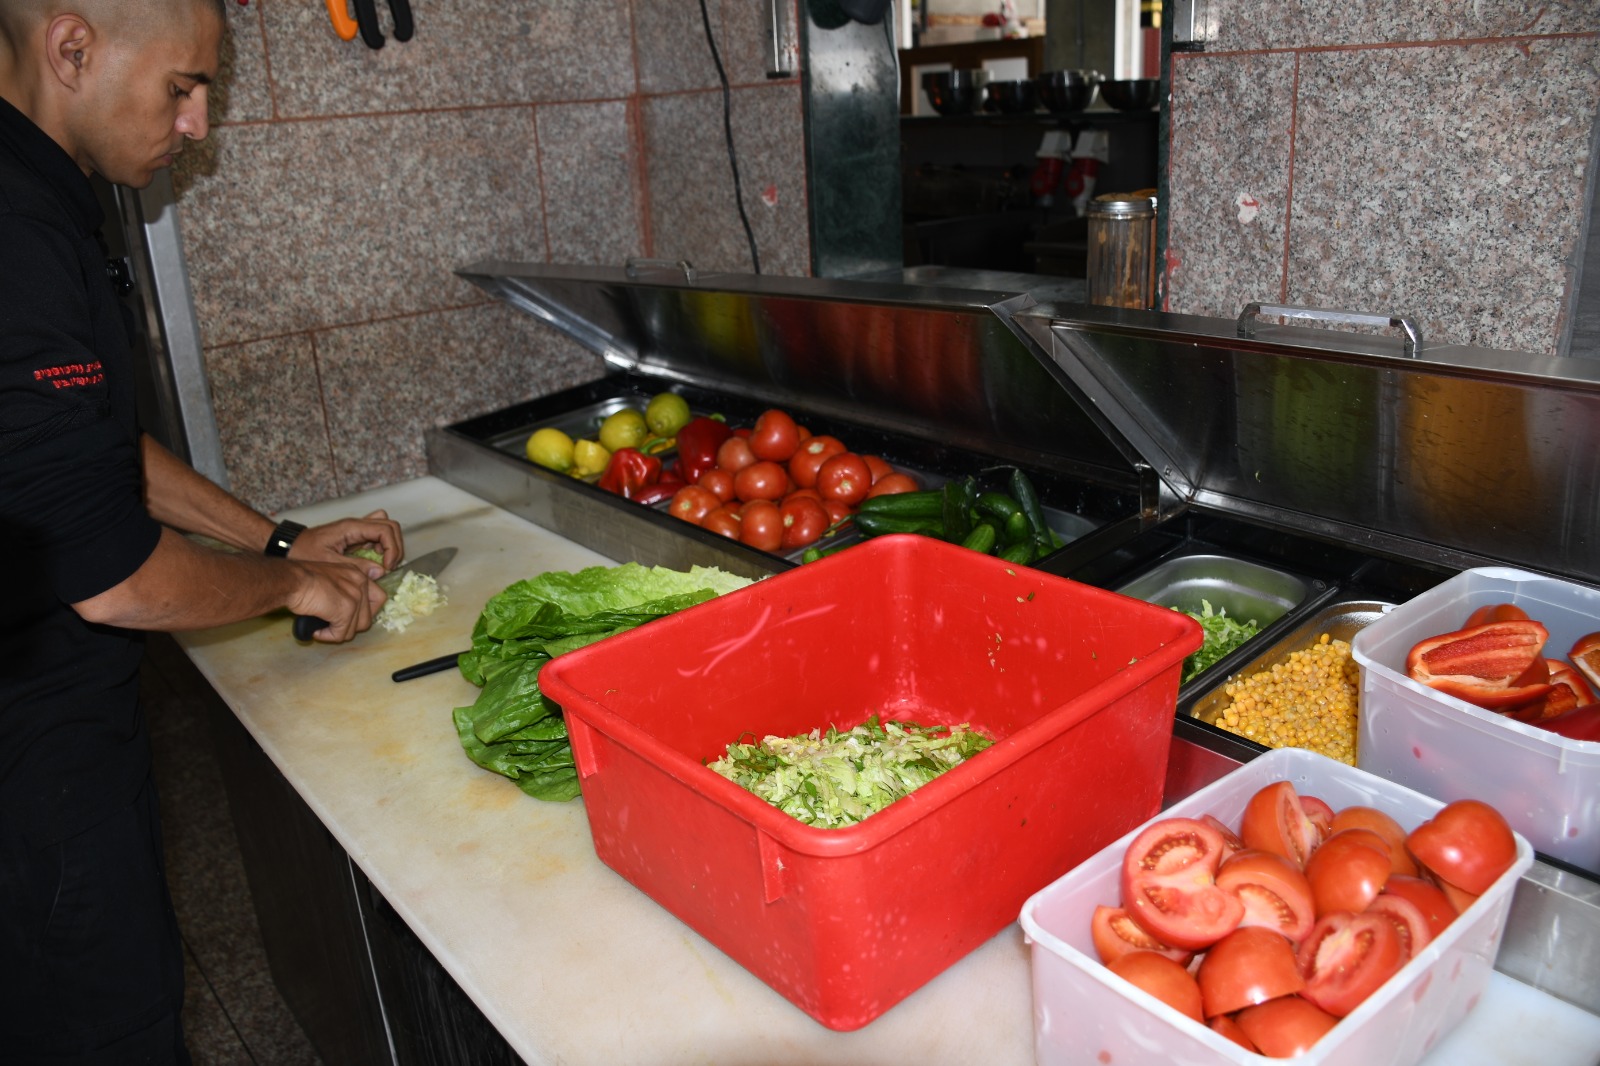  يافا: وجبات سريعة وساندويشات شهية للسحور في مطعم بالي بجيت